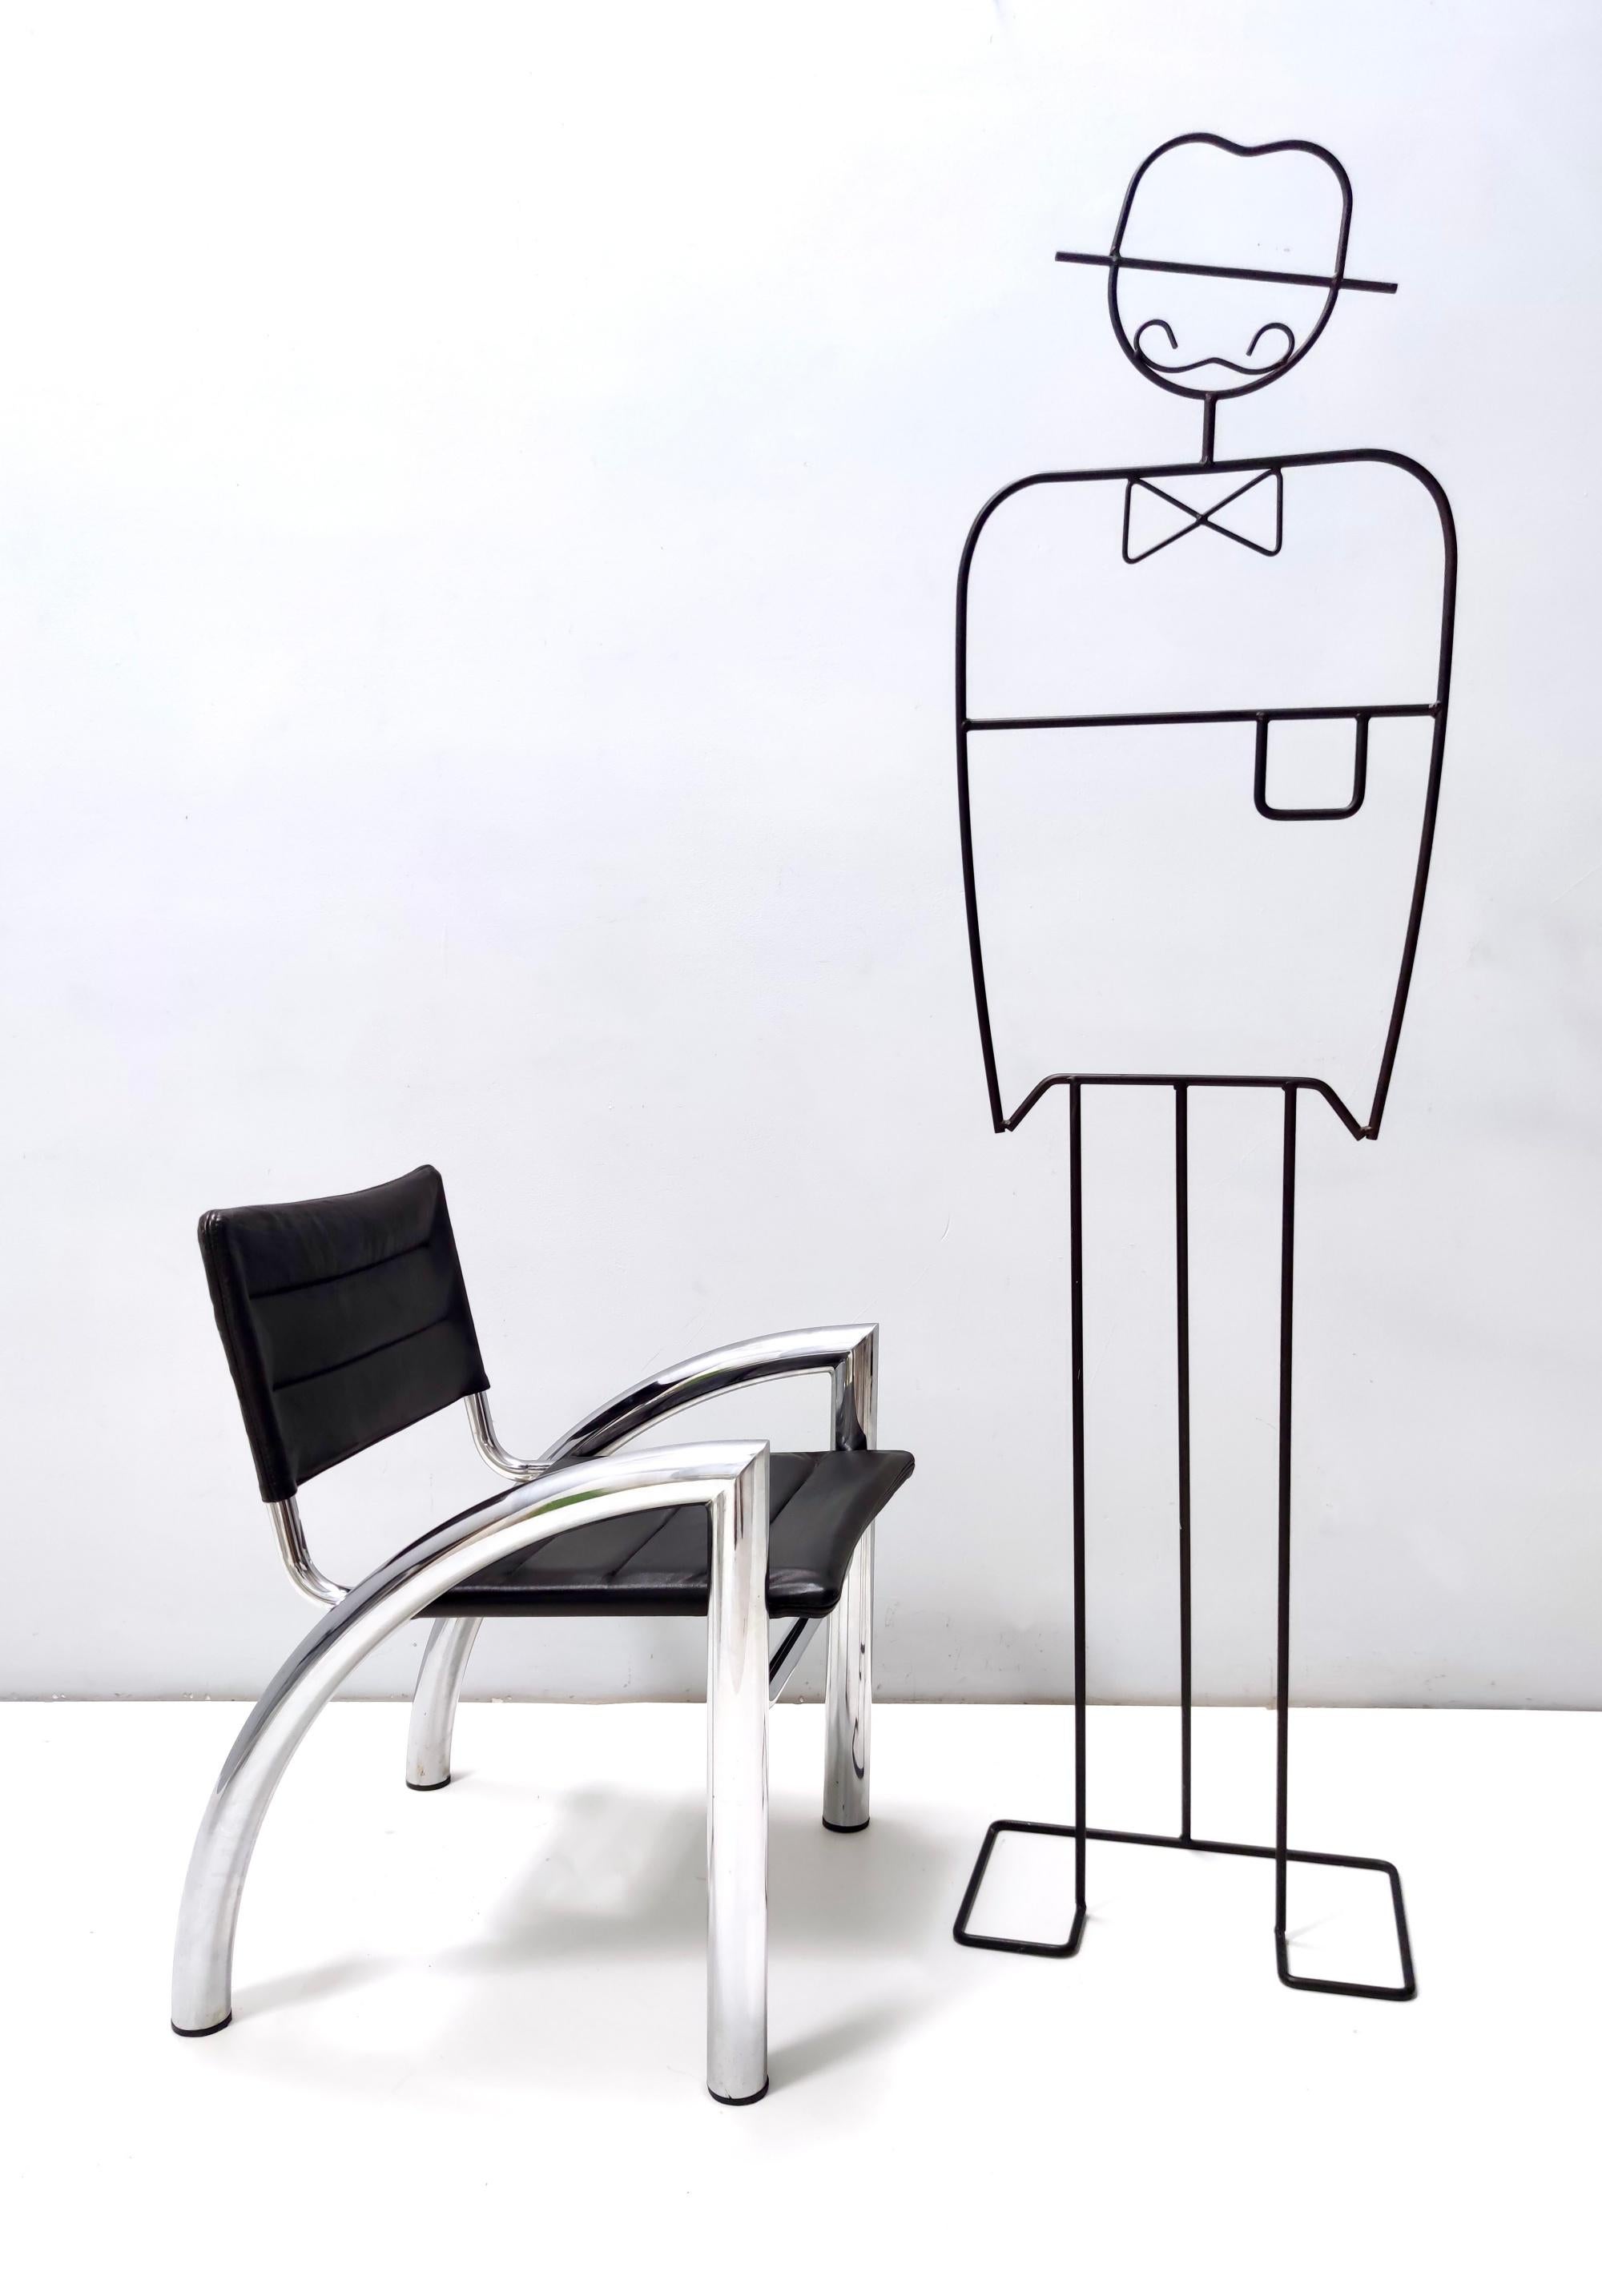 Fabriqué en Italie, 1976.
Il s'agit du modèle Cassiopea, conçu par Gae Aulenti pour Elam, Meda.
Ces chaises présentent une structure en acier tubulaire chromé et une assise et un dossier en cuir.
Il s'agit de pièces vintage, qui peuvent donc